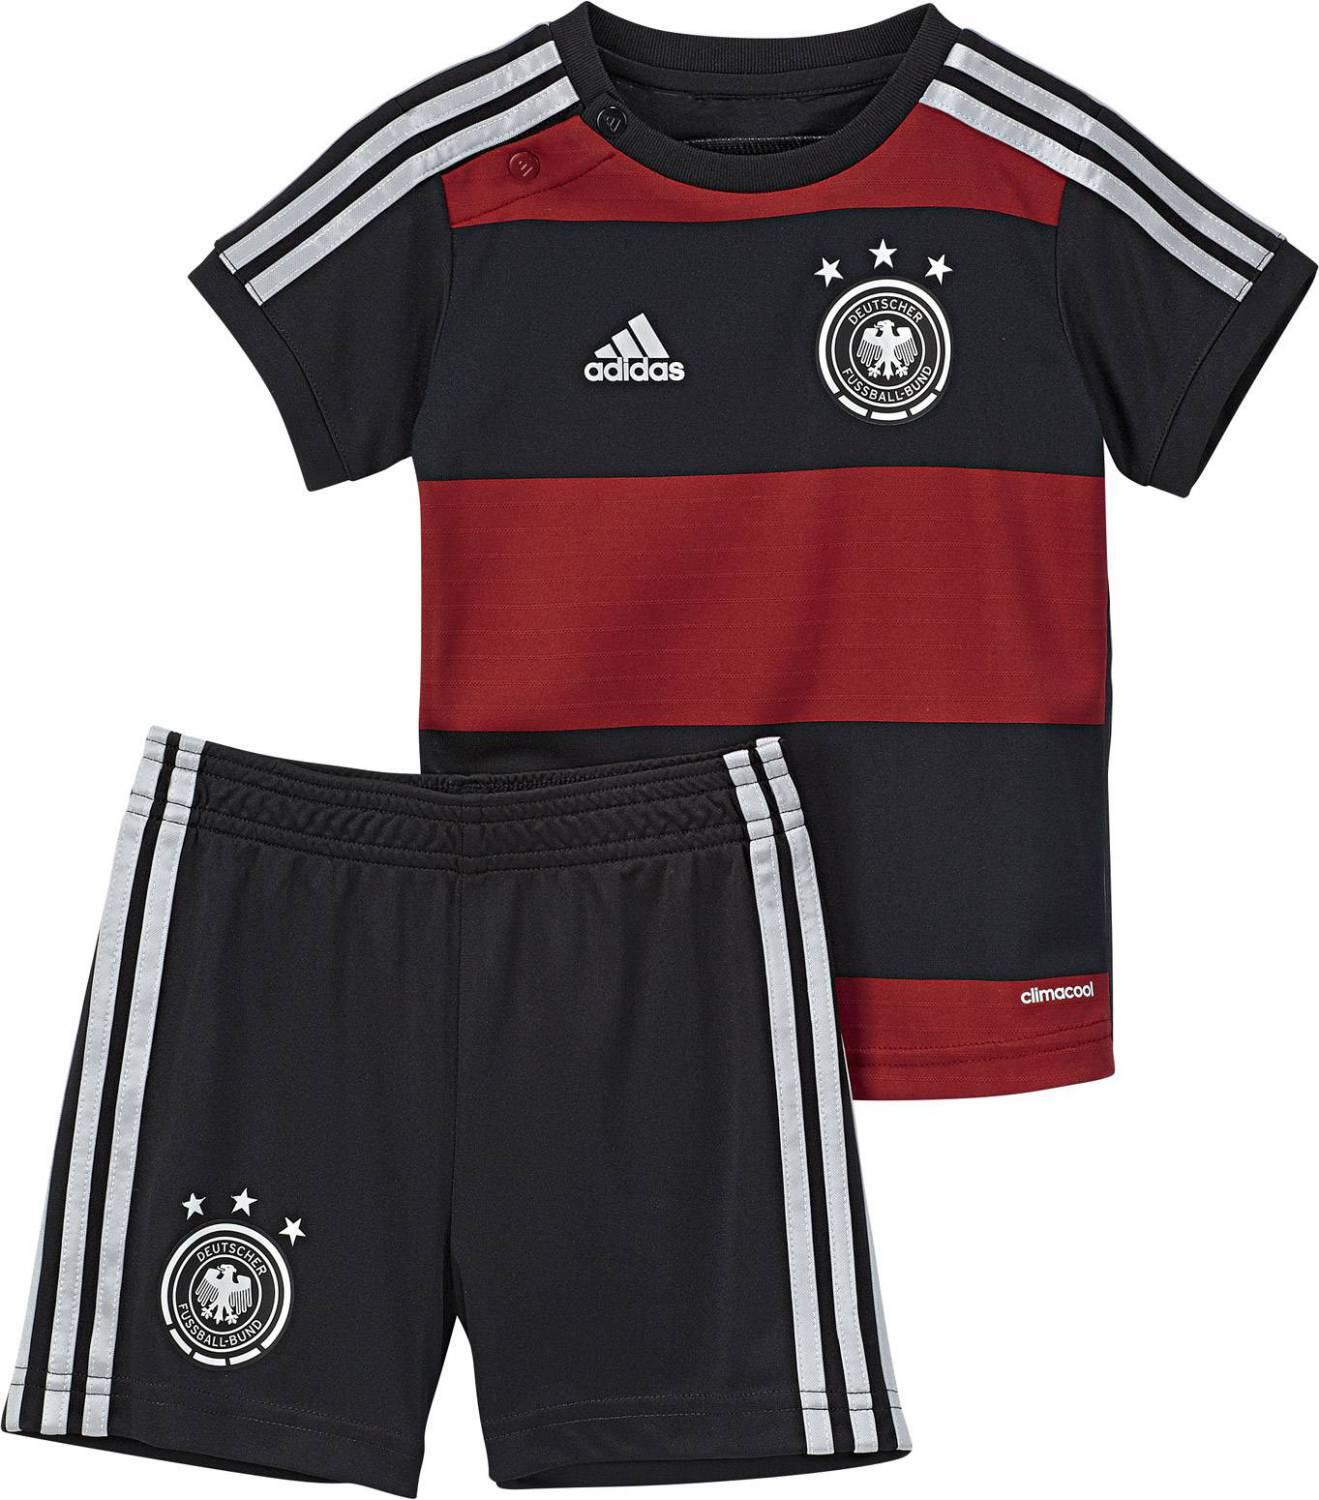 adidas DFB Away Babykit Auswärtsset (Größe: 74, black/victory red/matte silver)